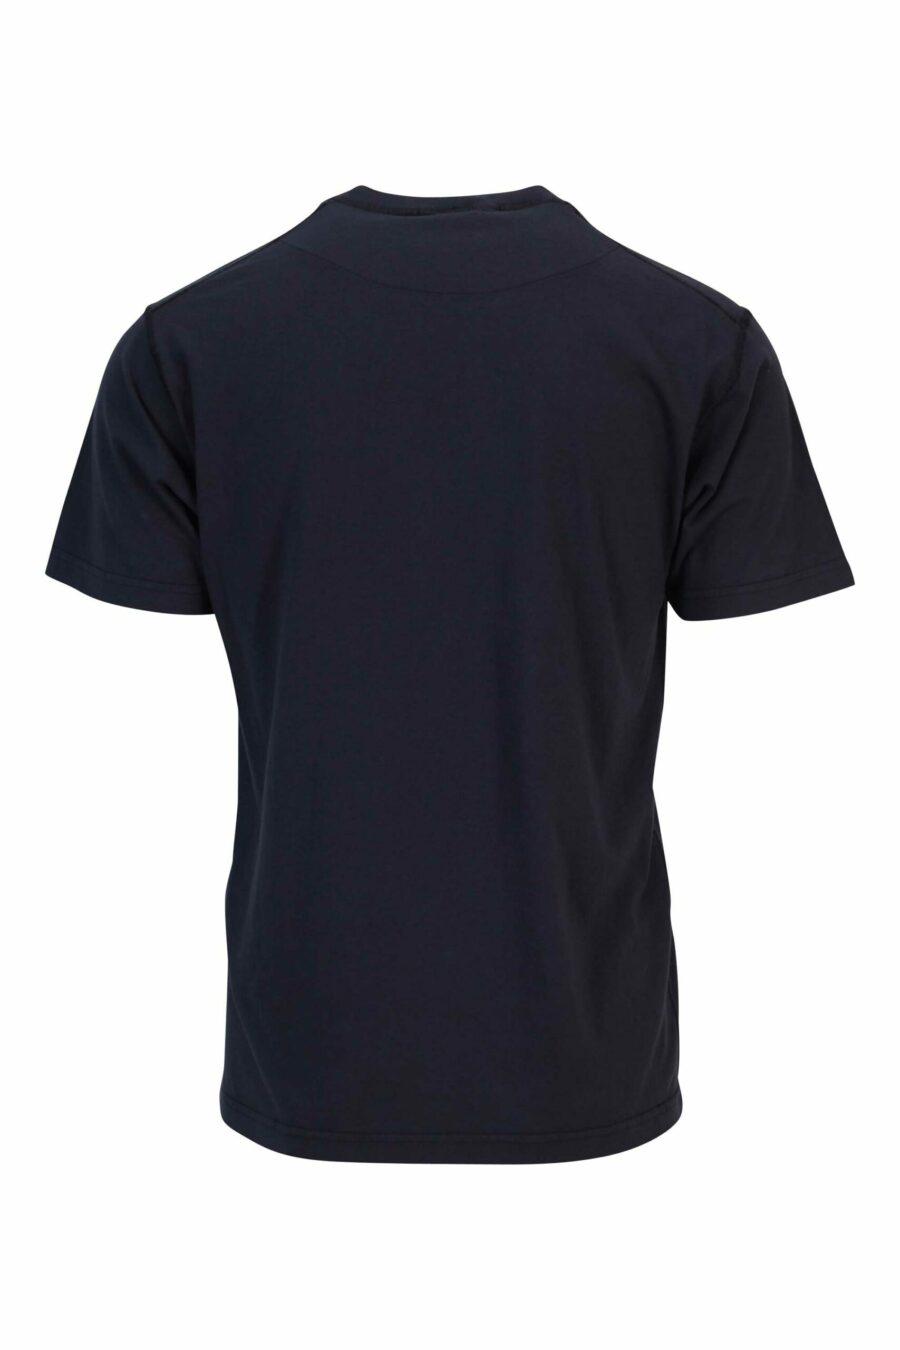 T-shirt bleu foncé avec mini-logo boussole - 8052572905155 1 à l'échelle